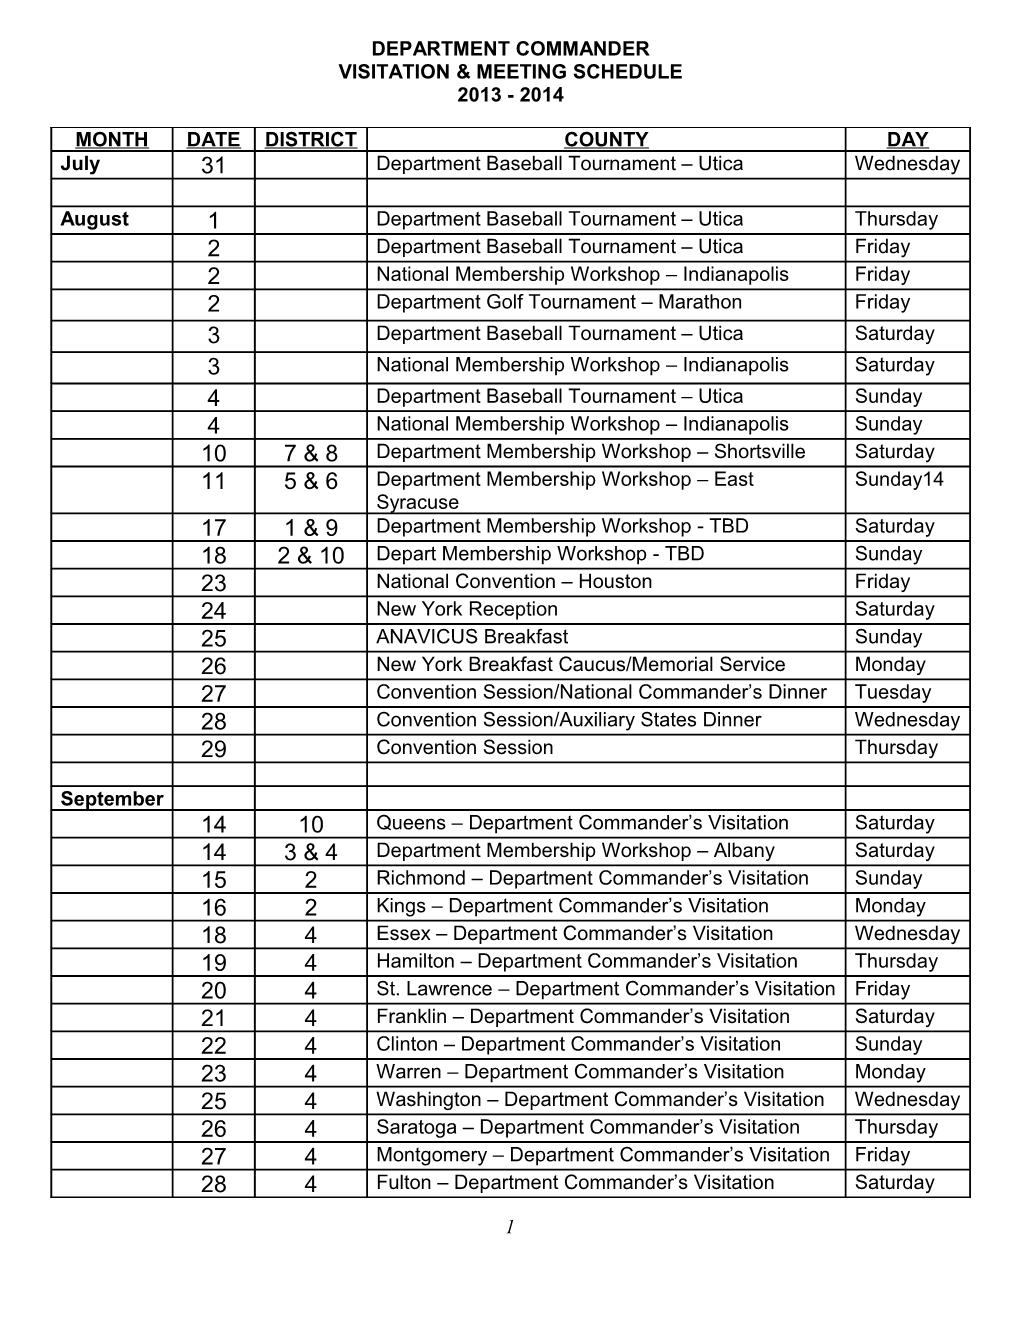 Department Commanders: County Visitation Schedule